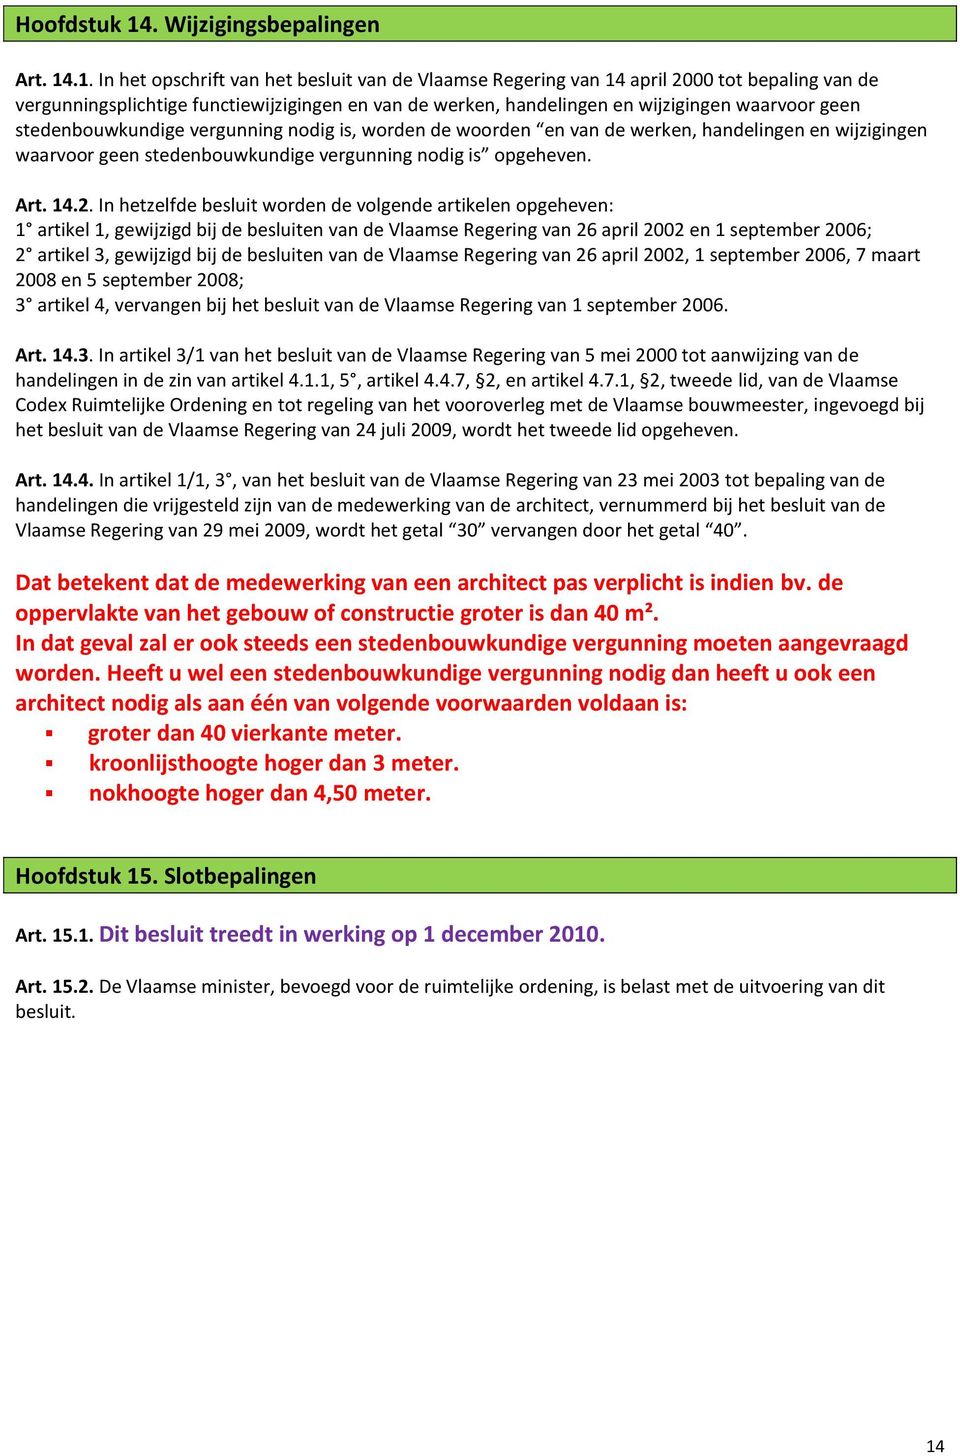 .1. In het opschrift van het besluit van de Vlaamse Regering van 14 april 2000 tot bepaling van de vergunningsplichtige functiewijzigingen en van de werken, handelingen en wijzigingen waarvoor geen